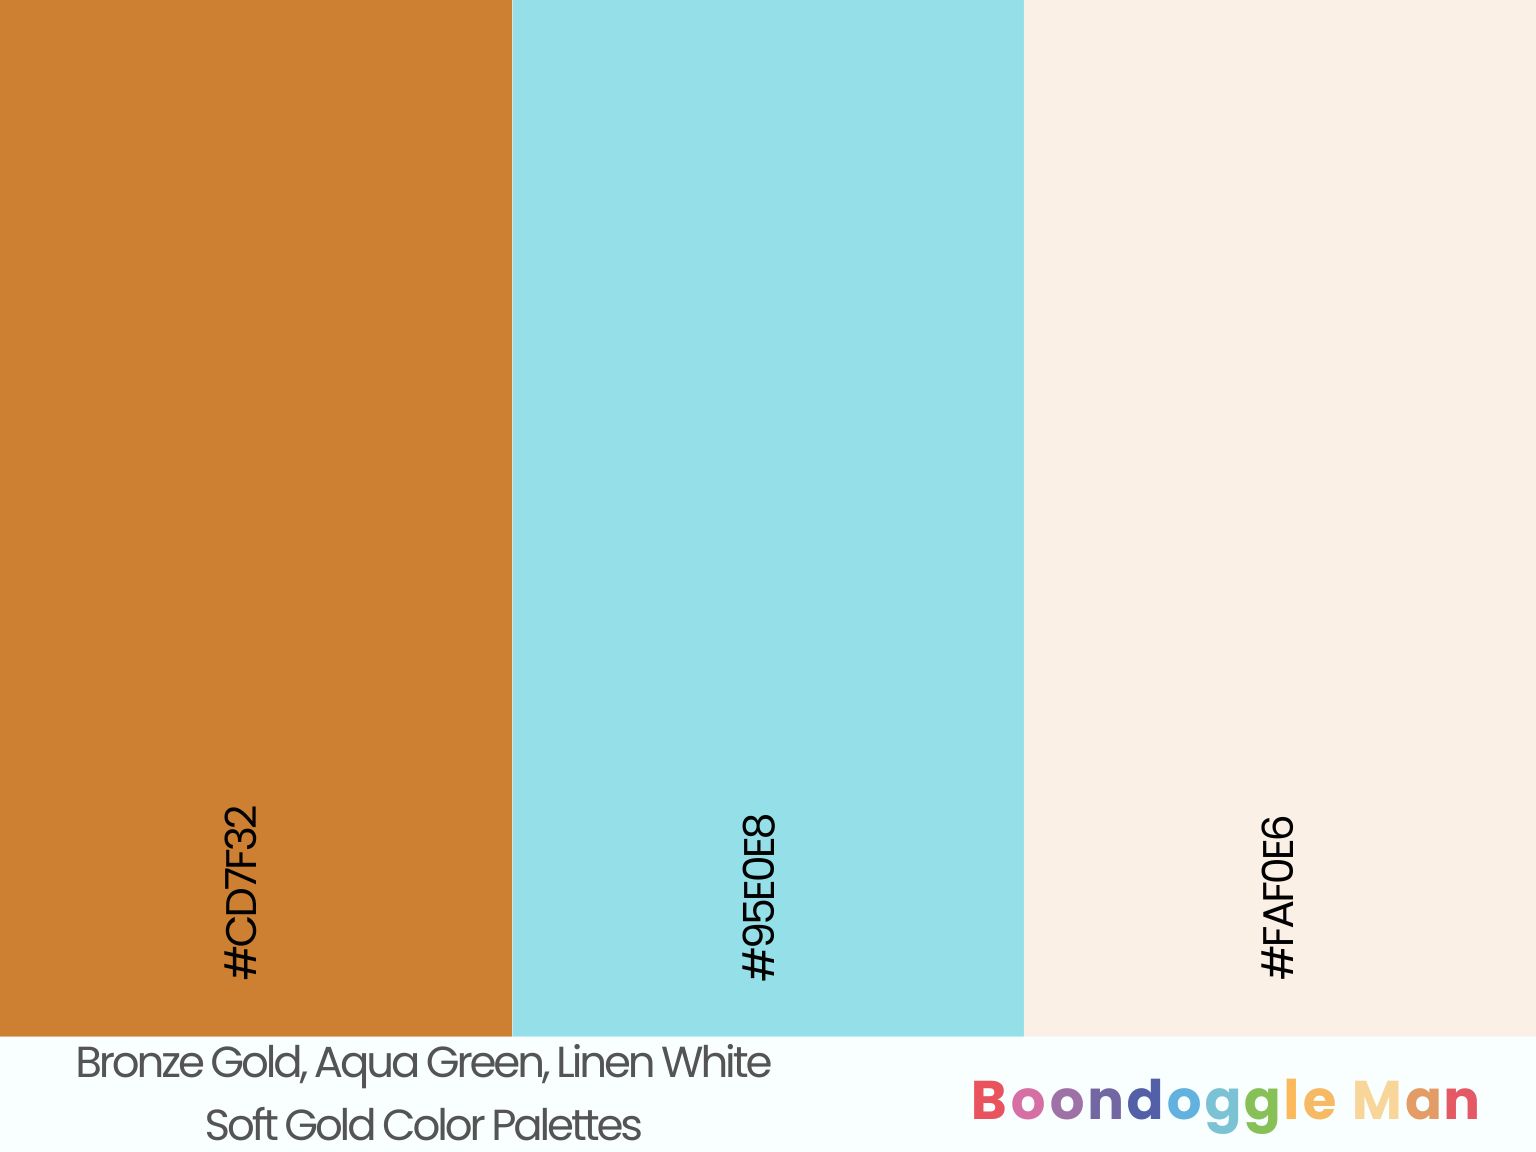 Bronze Gold, Aqua Green, Linen White